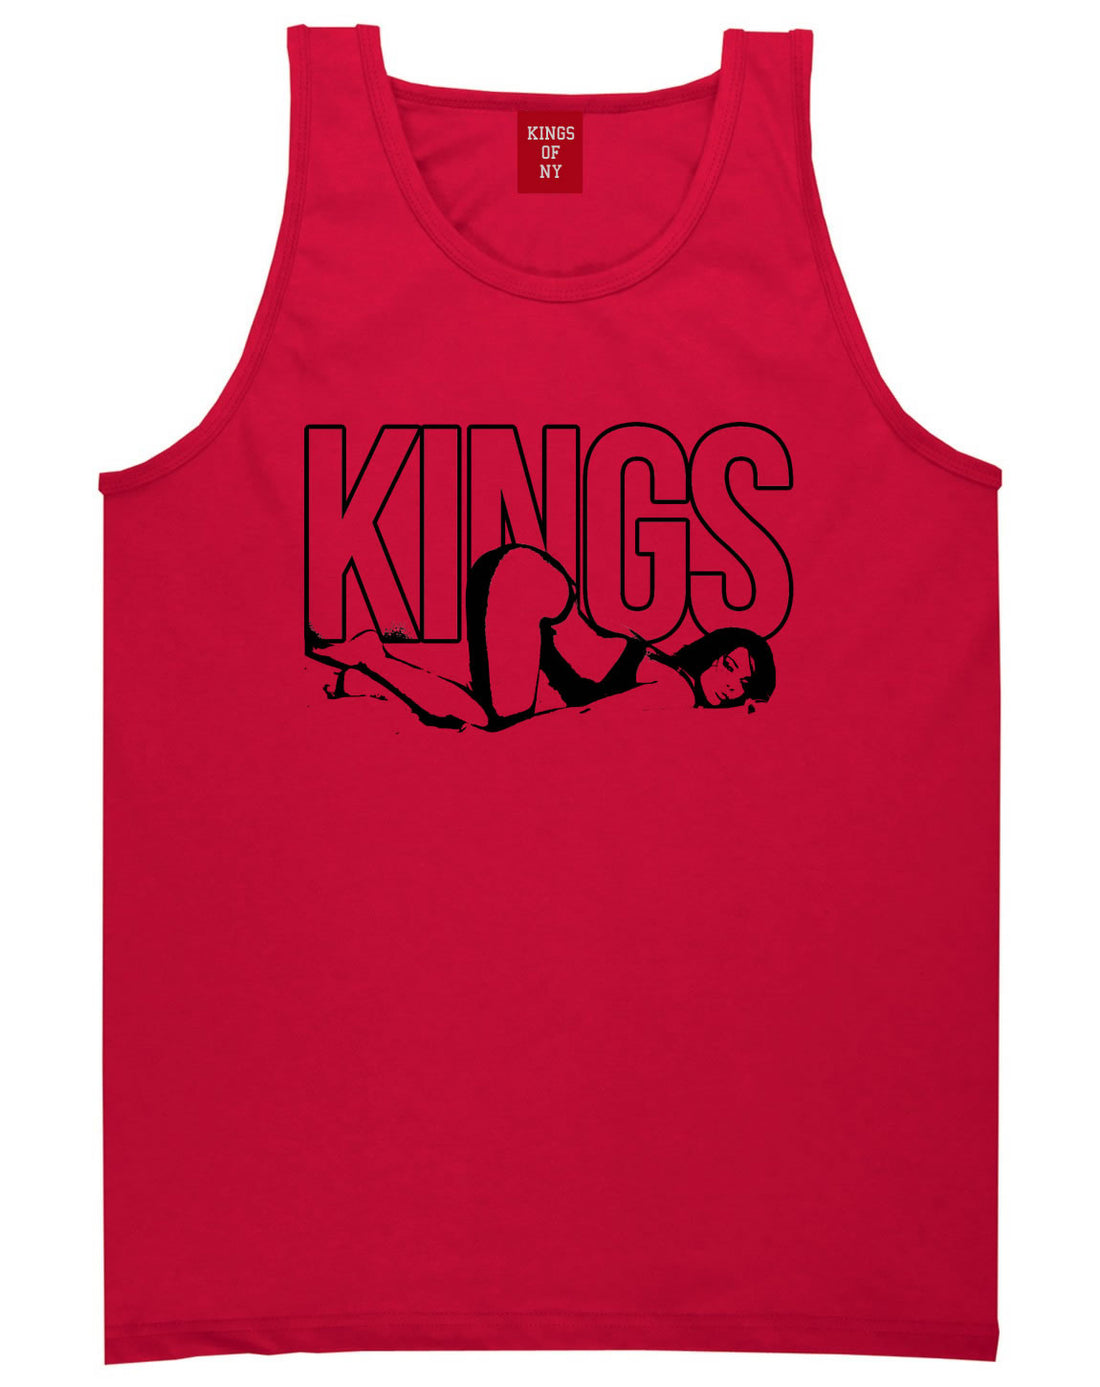 Kings Girl Streetwear Tank Top in Red by Kings Of NY